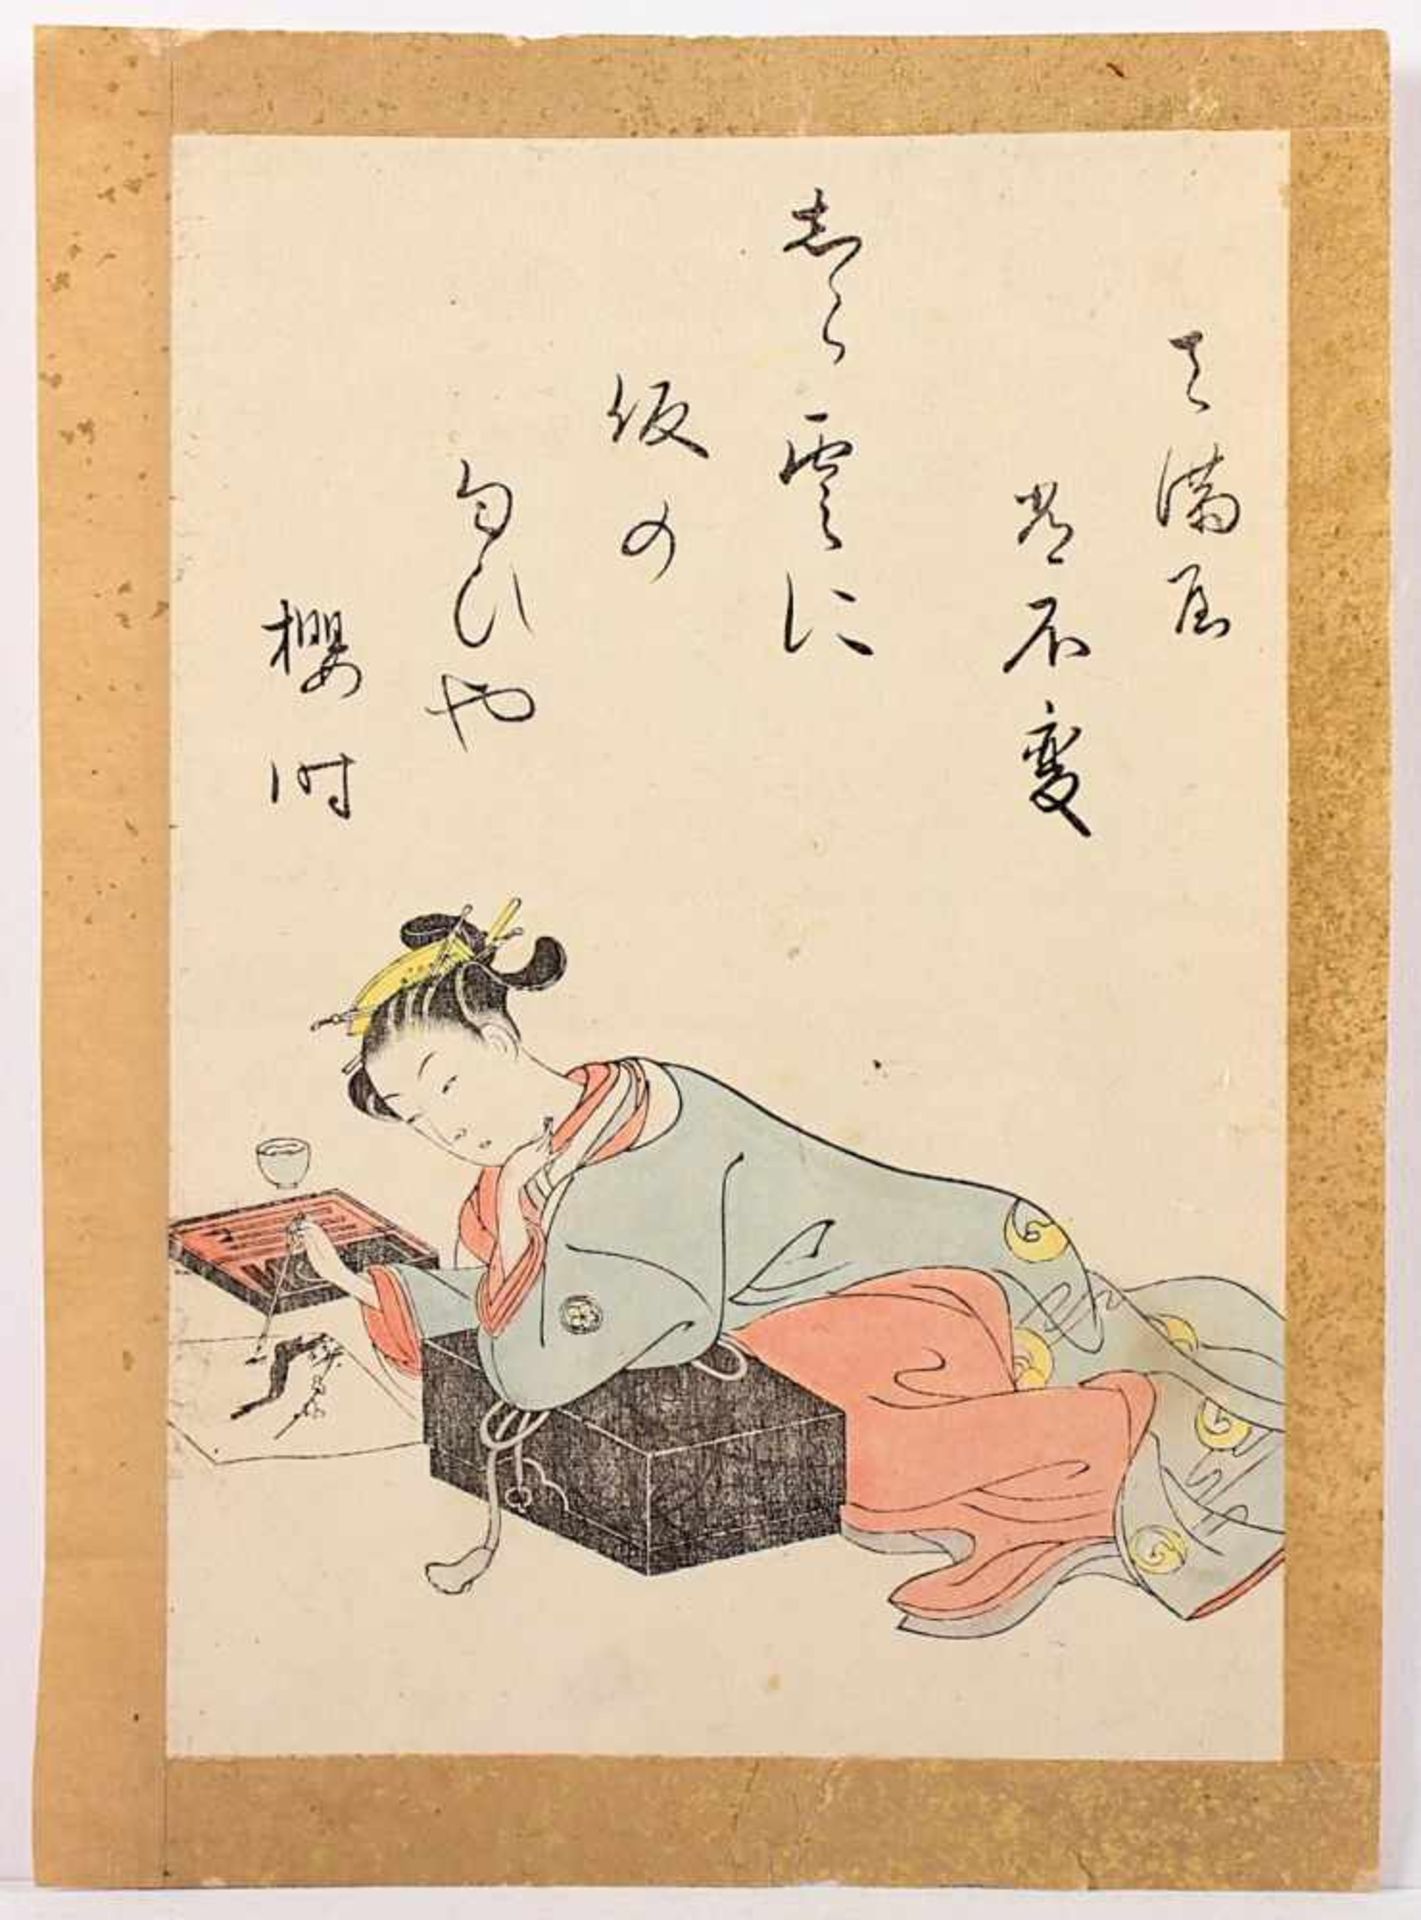 FARBHOLZSCHNITT, Suzuki HARUNOBU (1724/25-1770), "Kirschblütenzeit", Schönheit beim Zeichnen, 21 x - Bild 2 aus 2